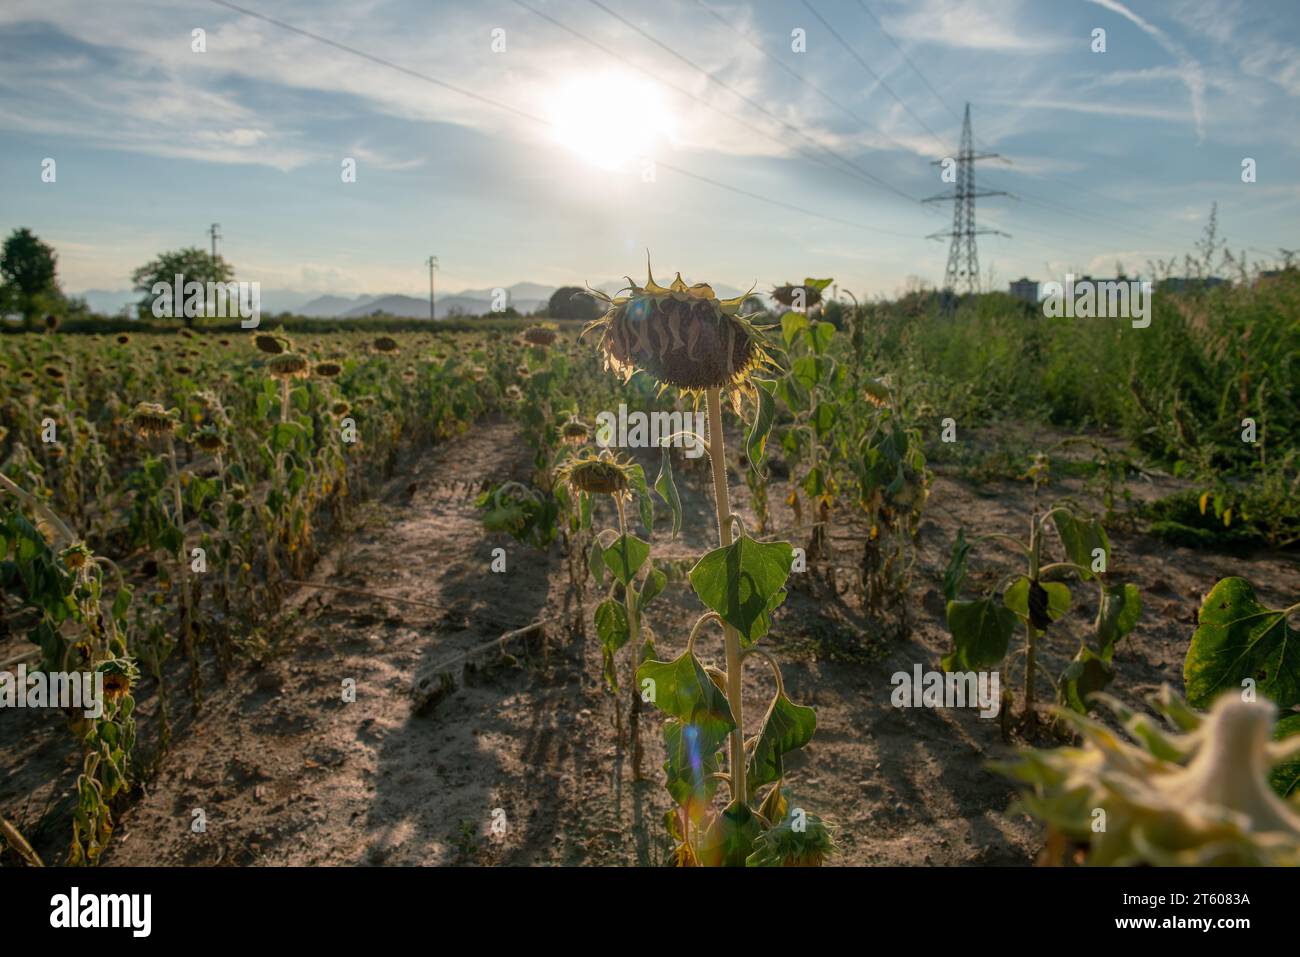 Trockene und trockene Sonnenblumenfelder haben aufgrund der Klimakrise und der Dürre Probleme in der gesamten landwirtschaftlichen Welt verursacht, was zu produktionskrisen geführt hat Stockfoto